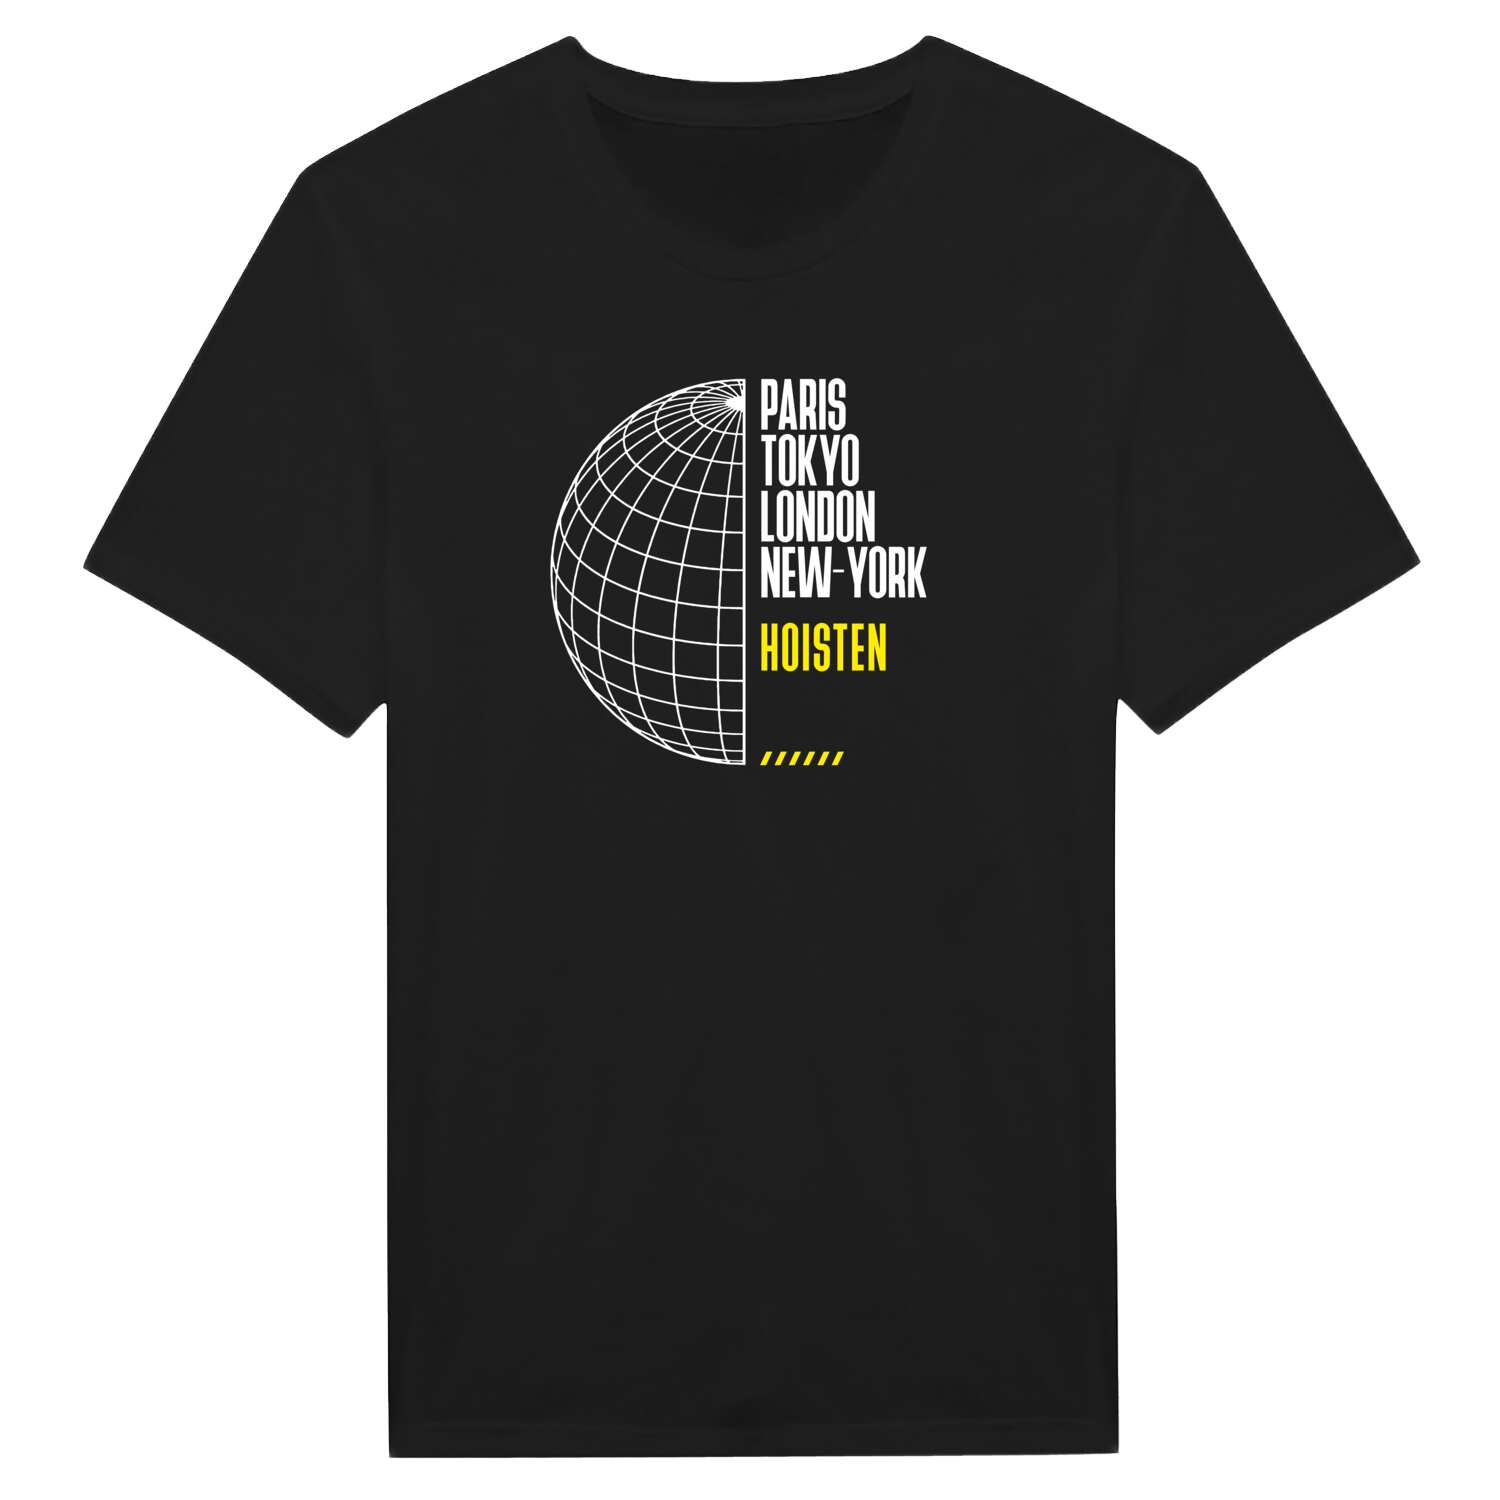 Hoisten T-Shirt »Paris Tokyo London«